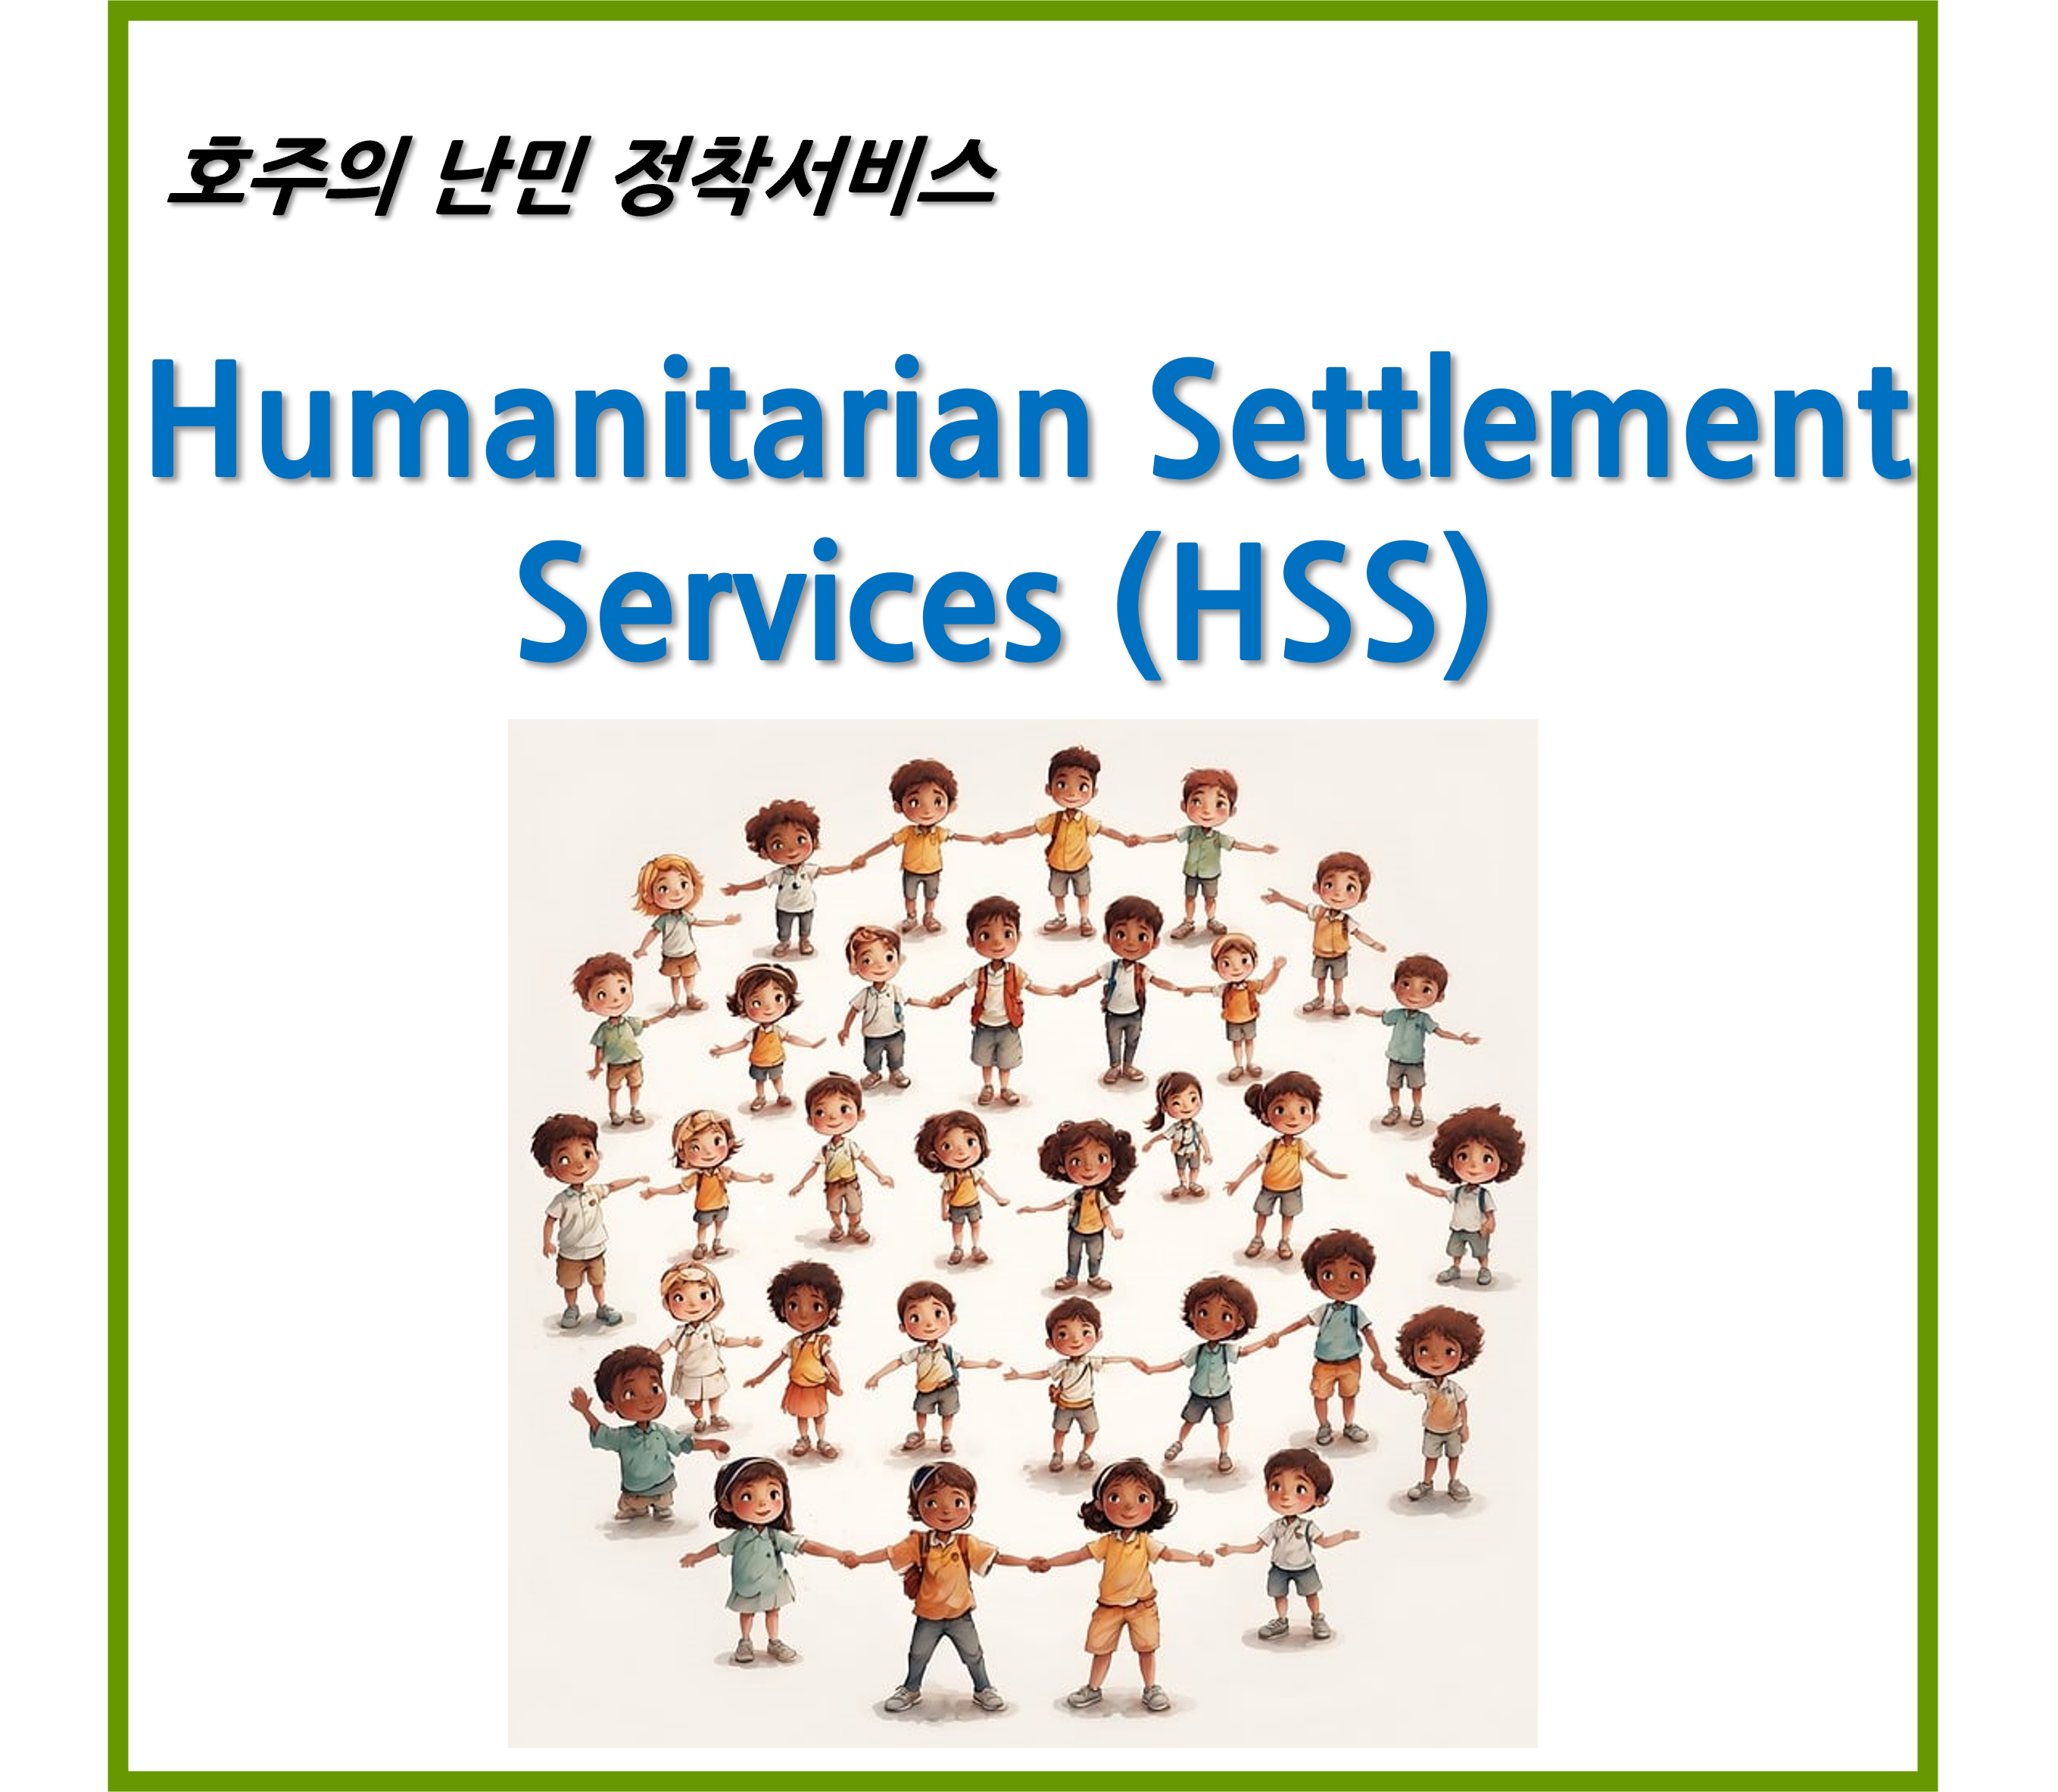 호주의 난민 정착 서비스 Humanitarian Settlement Services